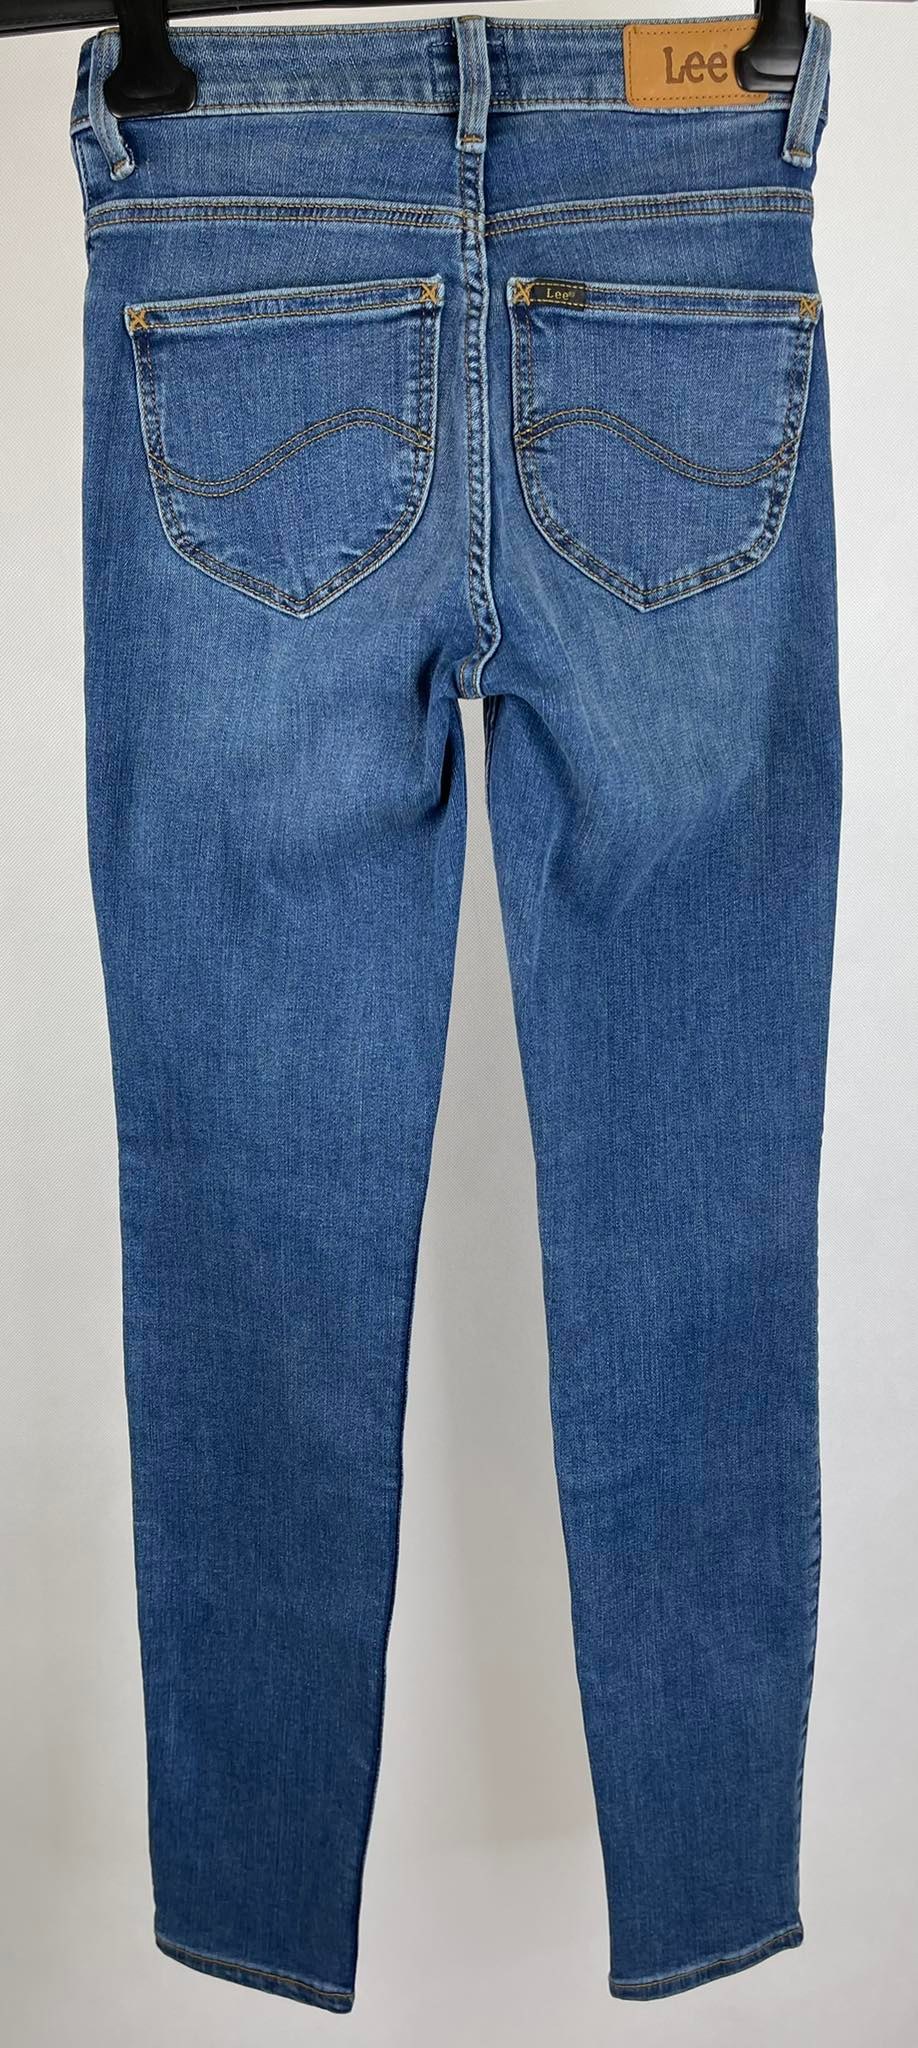 Spodnie damskie jeansowe Lee - Fitting Room